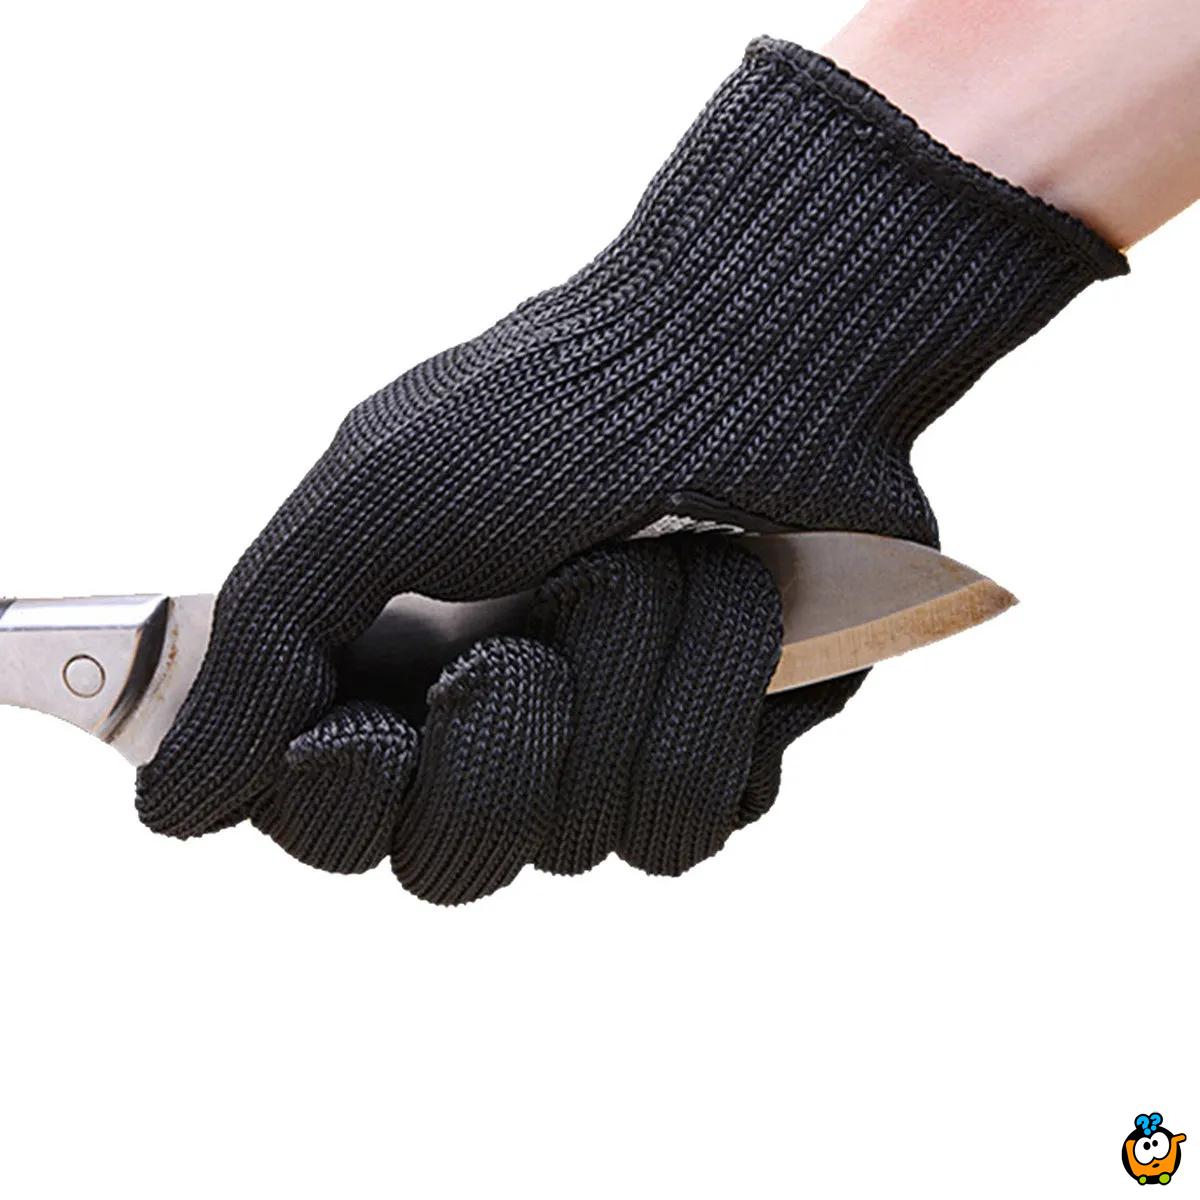 Hand Protective – Zaštitne rukavice od sečiva i povreda